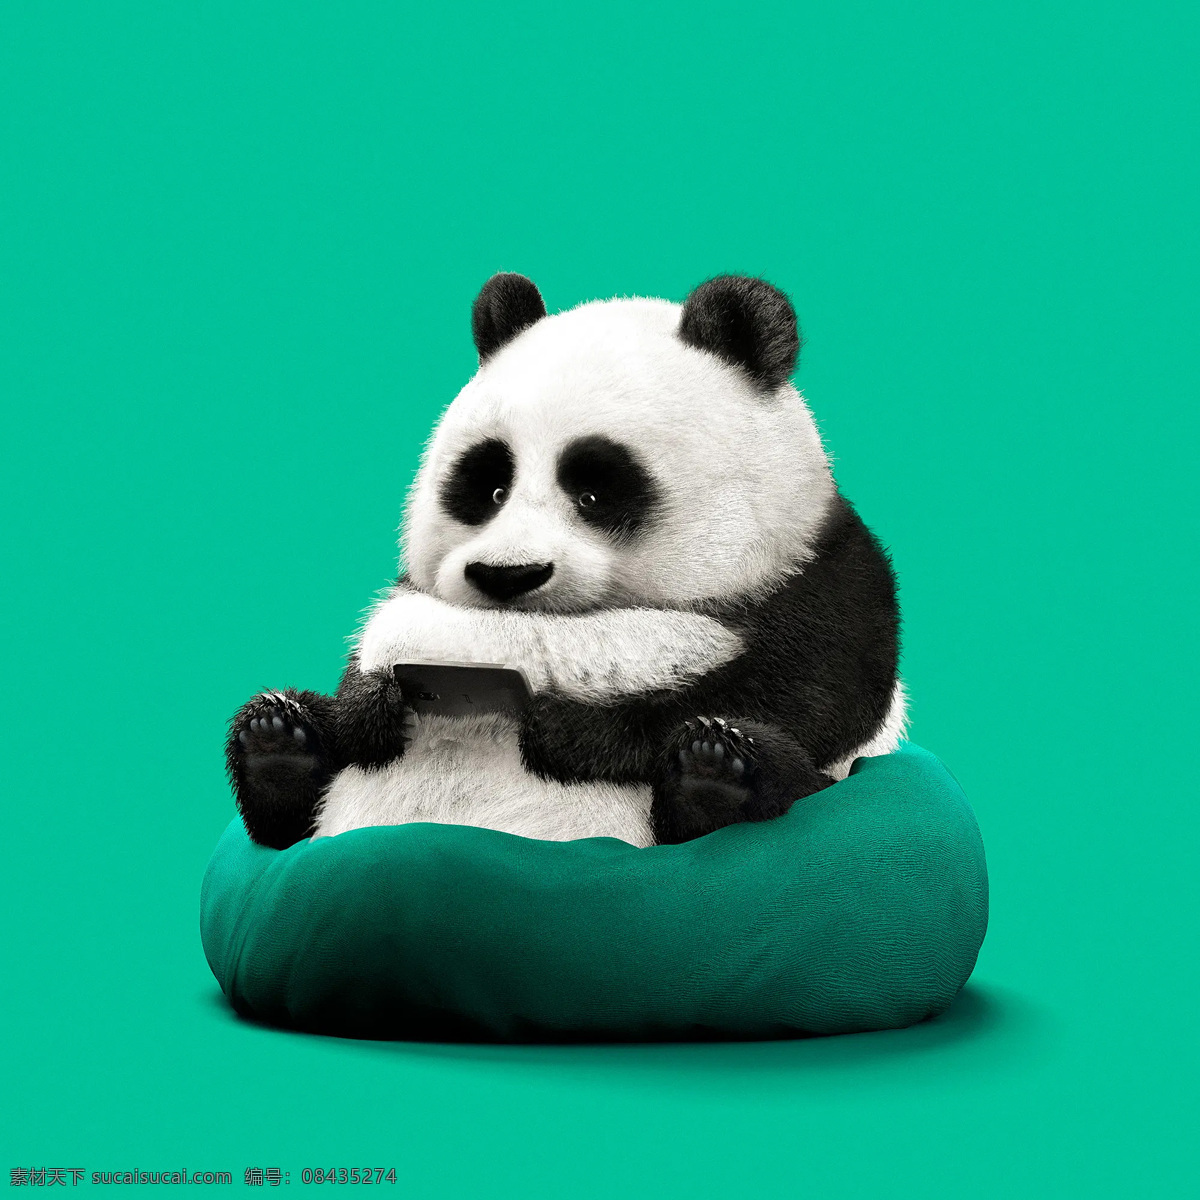 可爱 大熊猫 玩 手机 卡通动物 卡通熊猫 搞笑动物 熊猫打游戏 游戏狂 手机狂 动漫动画